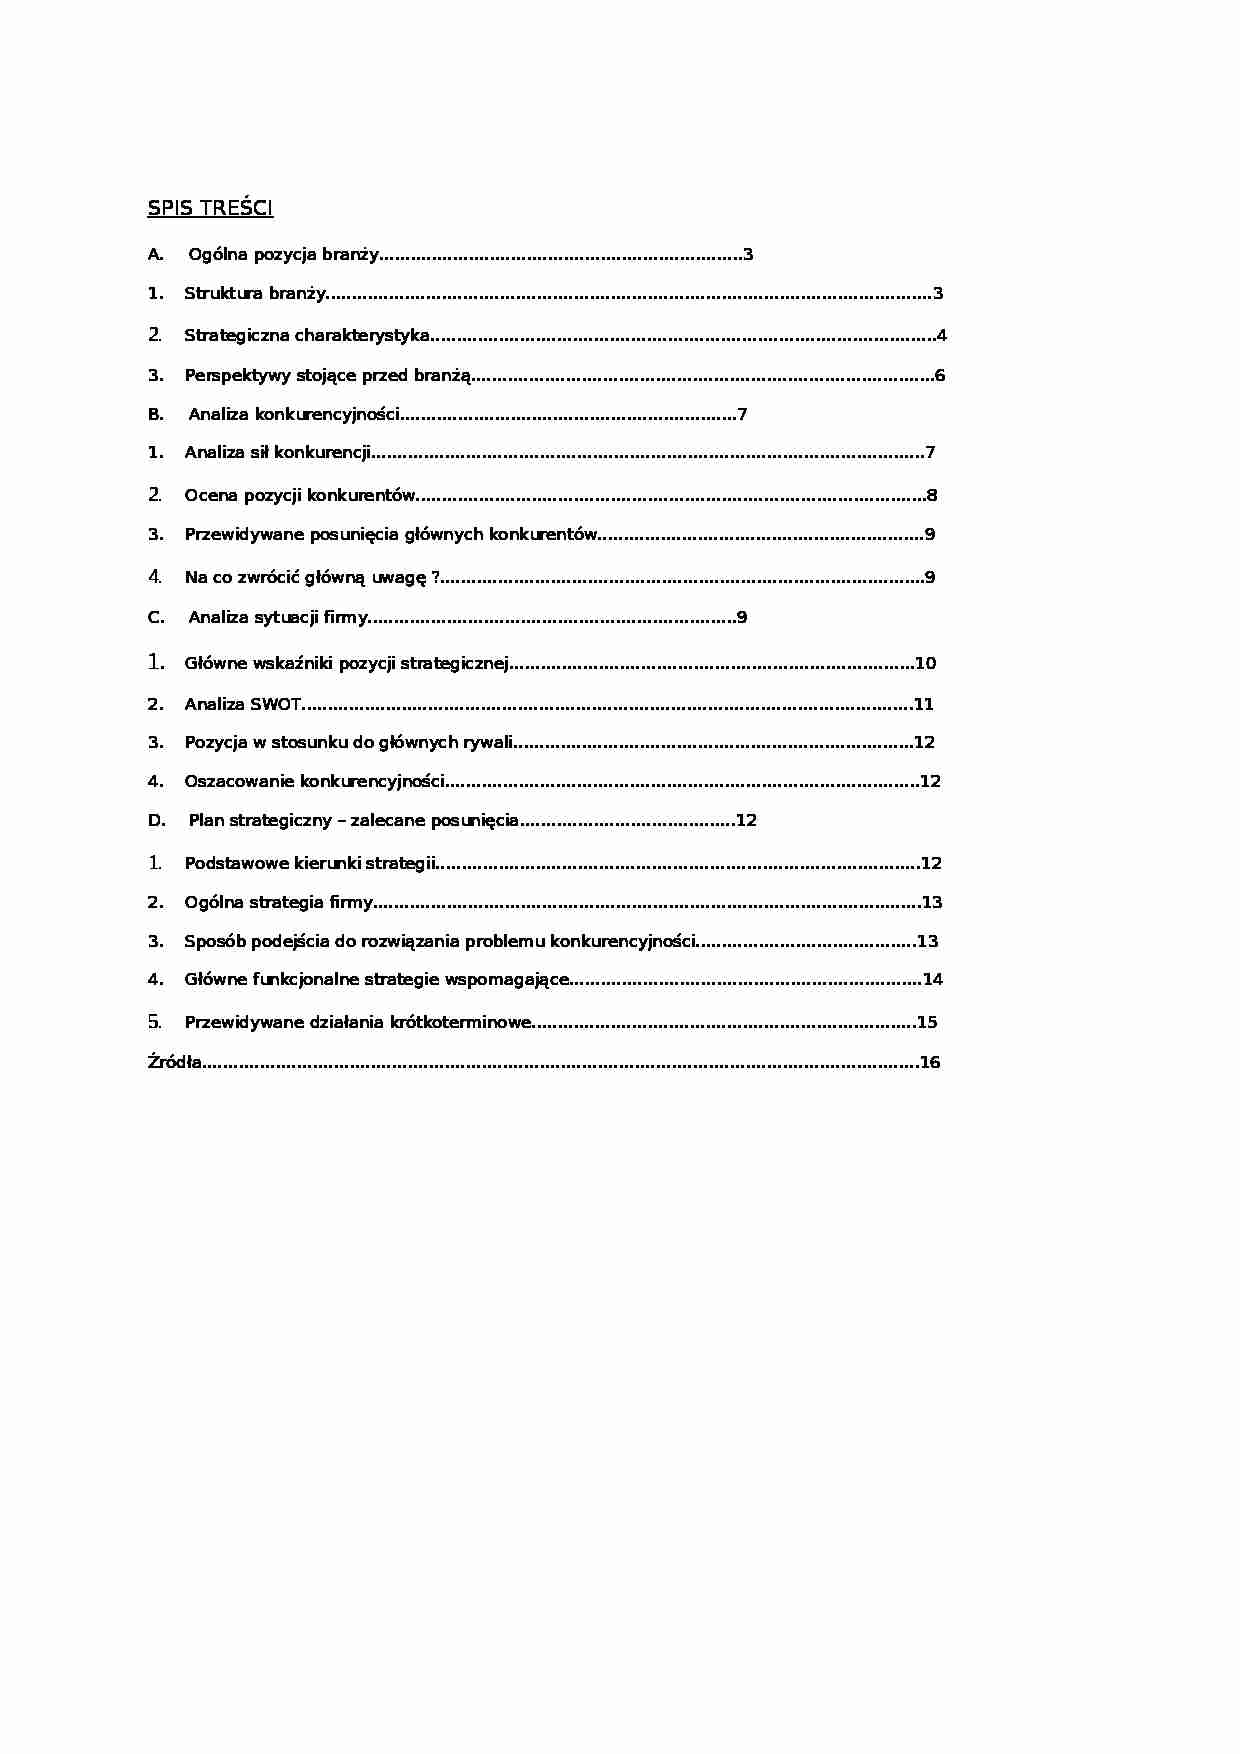 Analiza strategiczna firmy budowlanej - Rentowność - strona 1